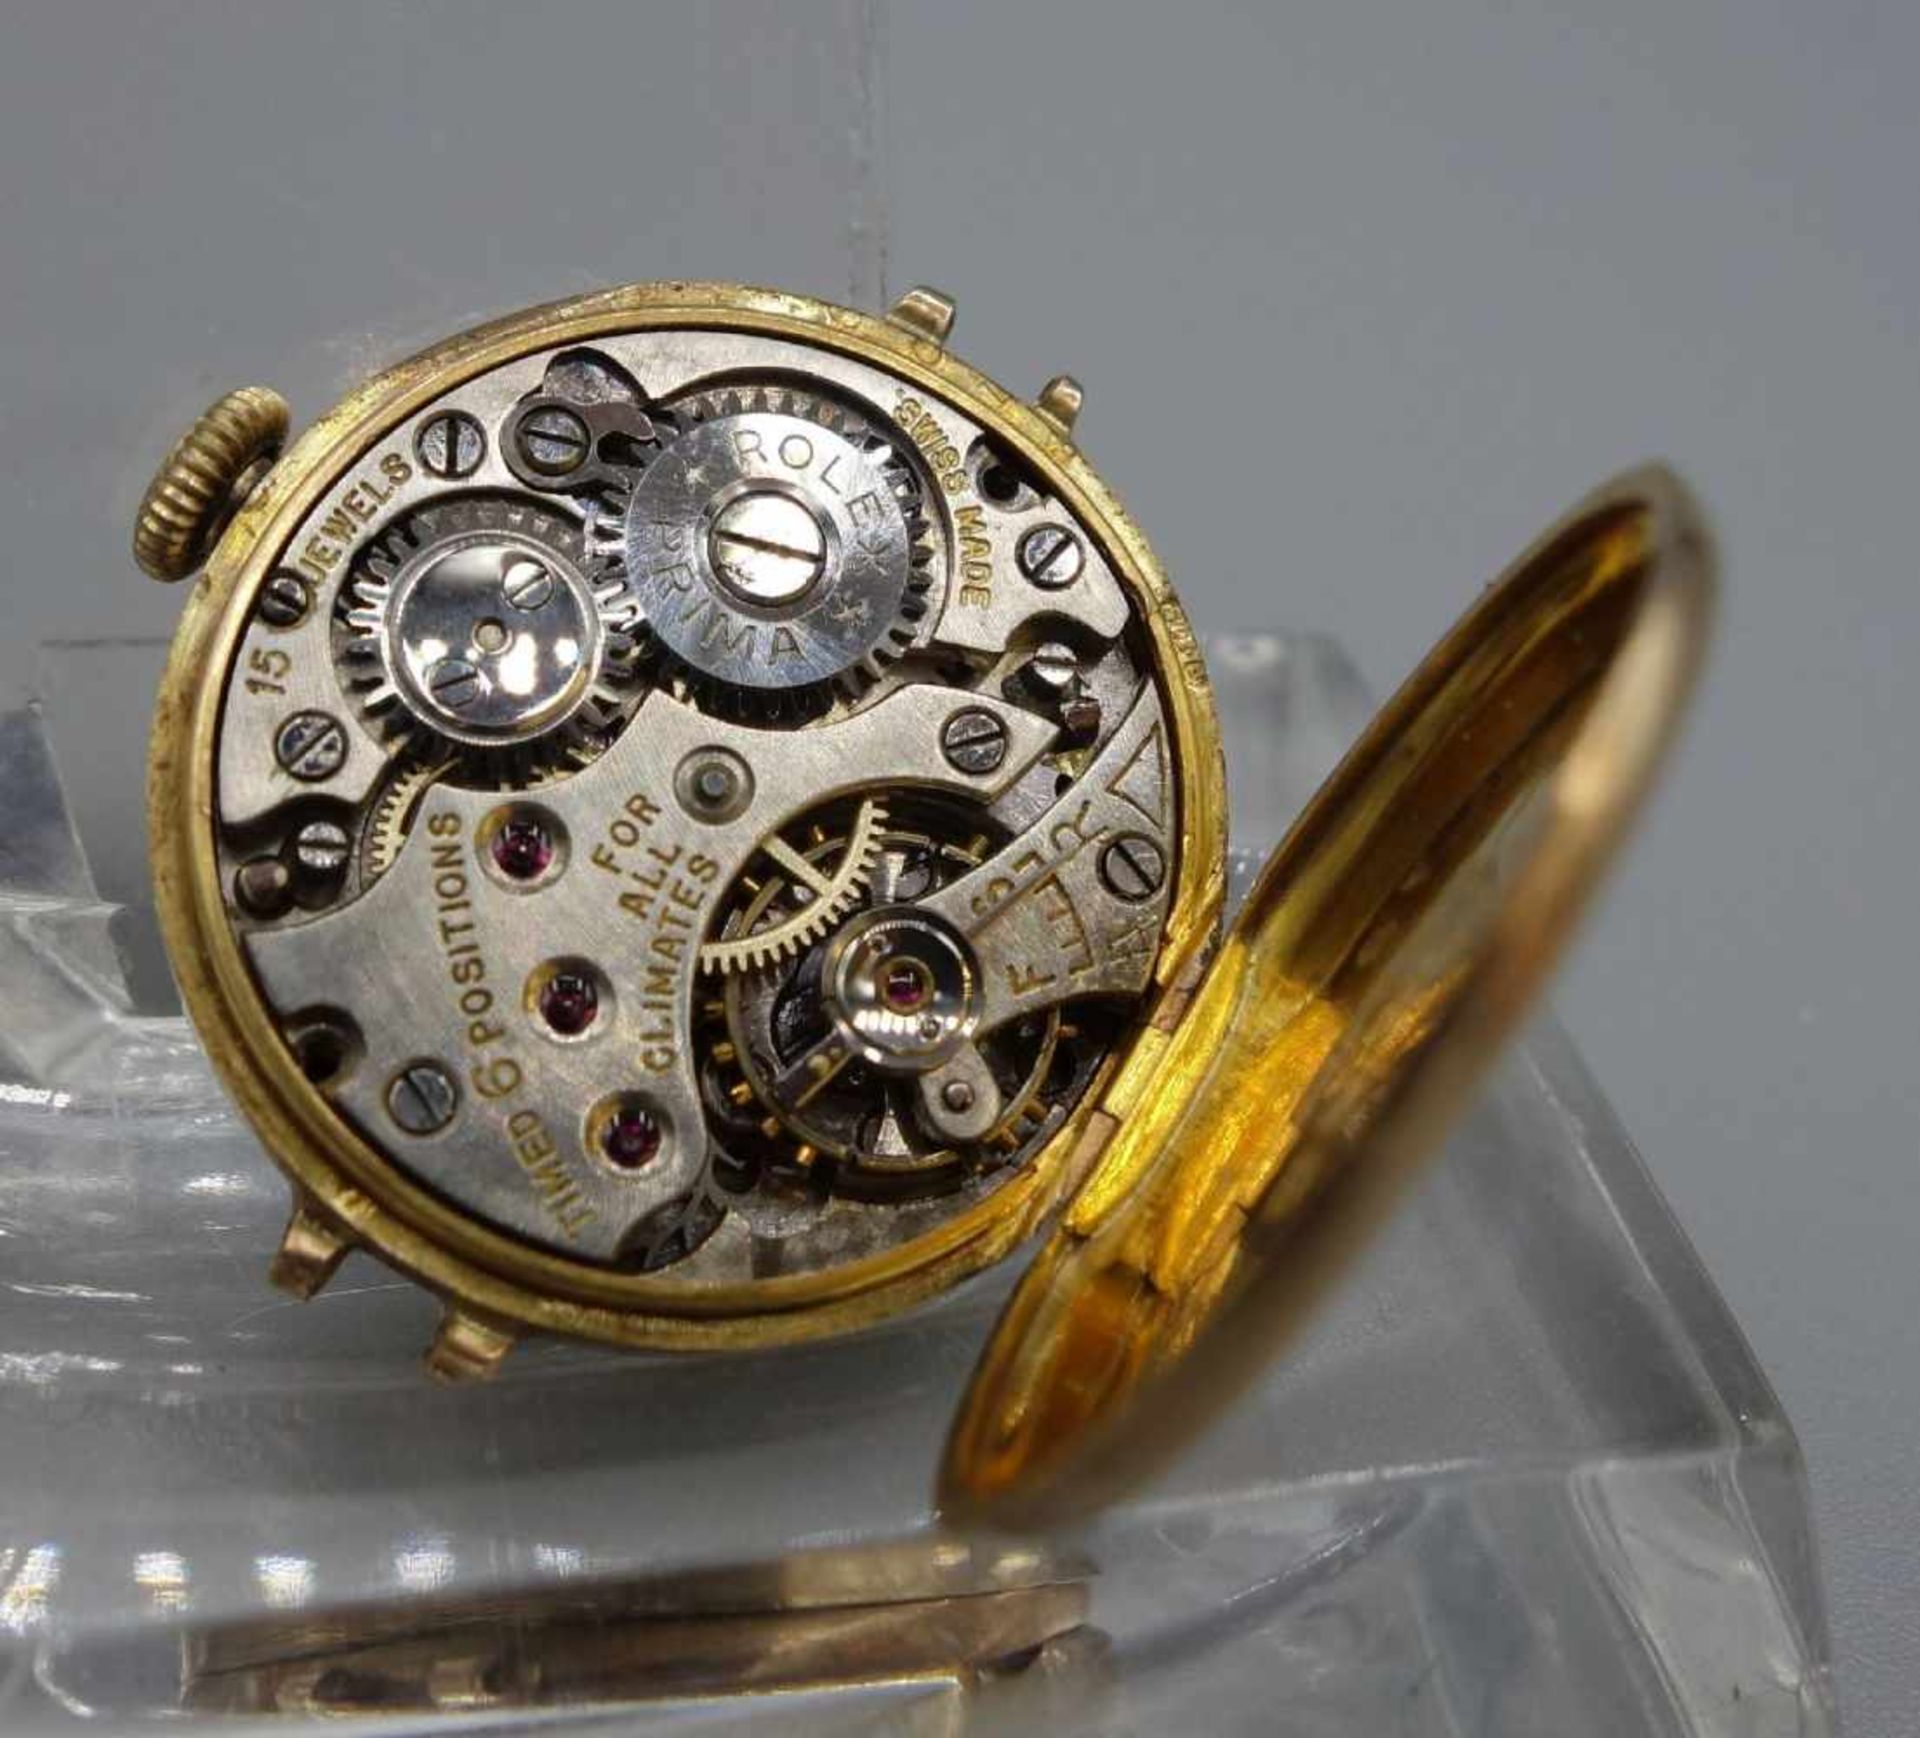 VINTAGE ROLEX DAMEN ARMBANDUHR / lady's wristwatch, Handaufzug. Goldenes Uhrengehäuse ohne - Bild 3 aus 4